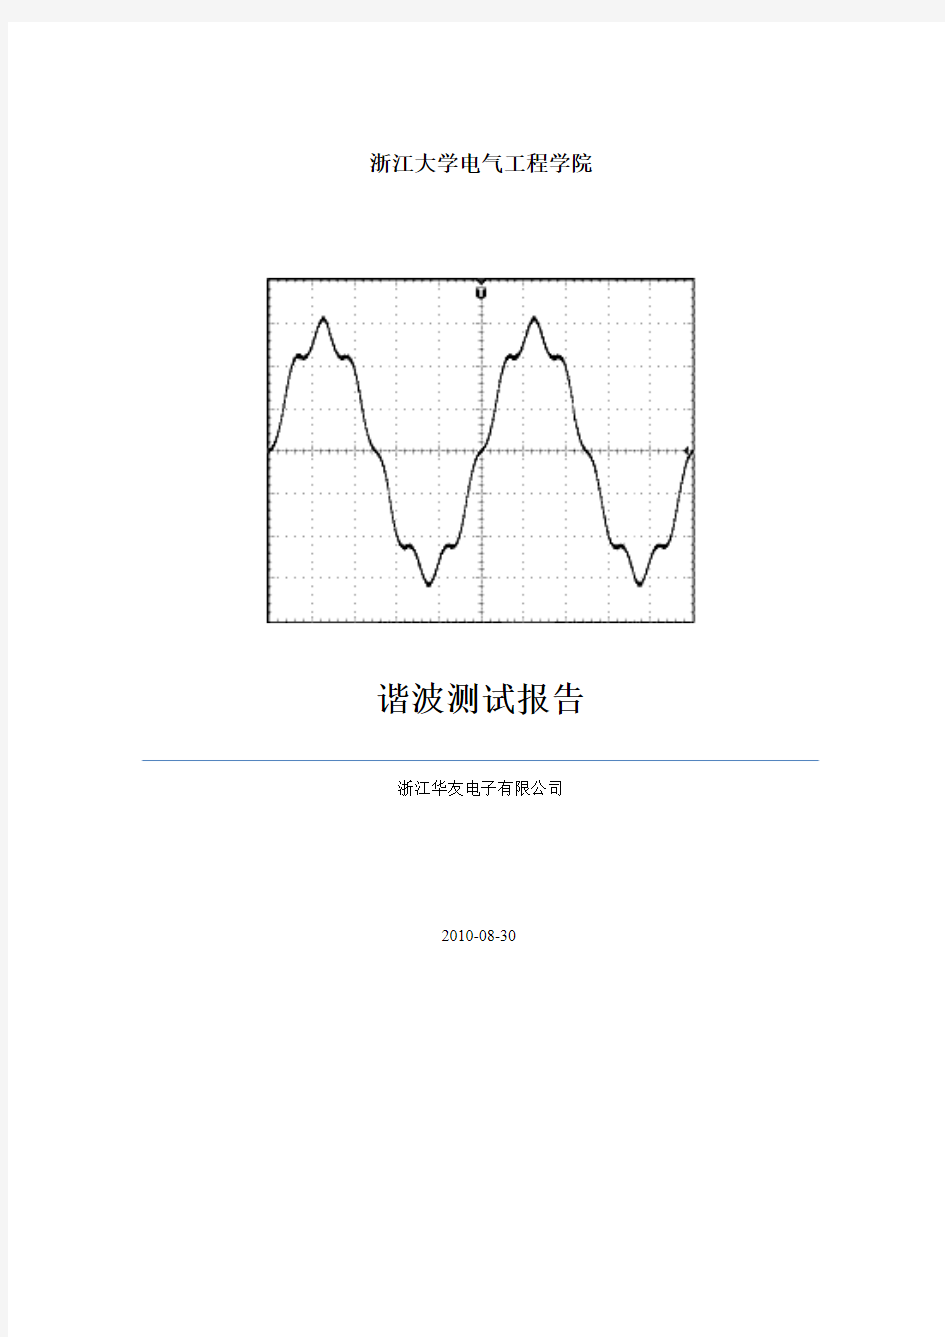 高频开关电源谐波测试数据及计算方法--浙江大学报告